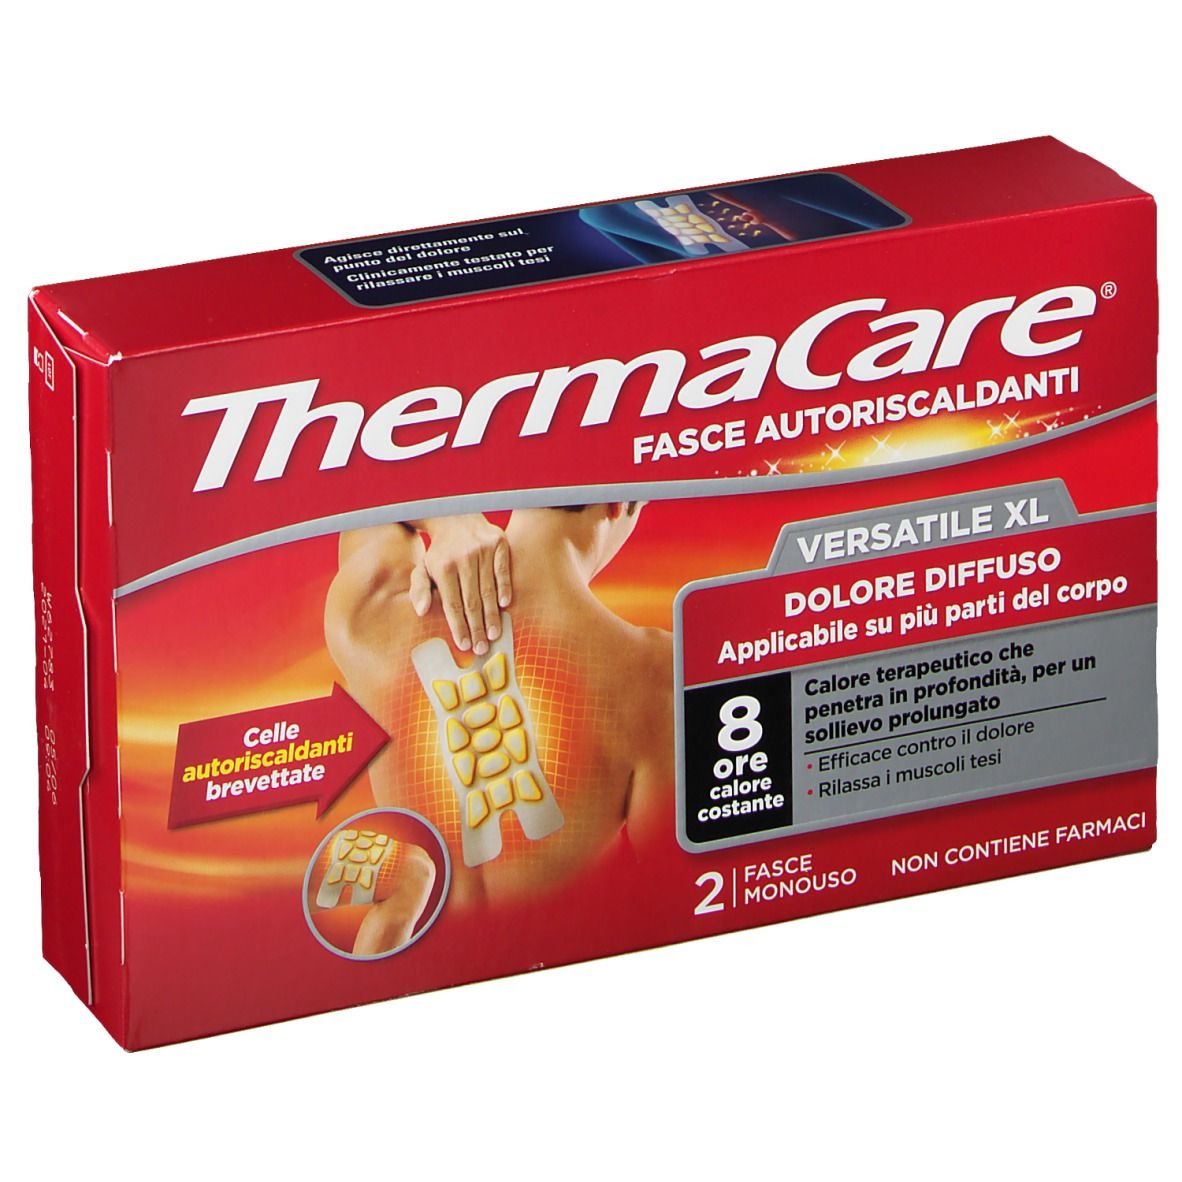 Thermacare® Fasce Autoriscaldanti Versatile XL